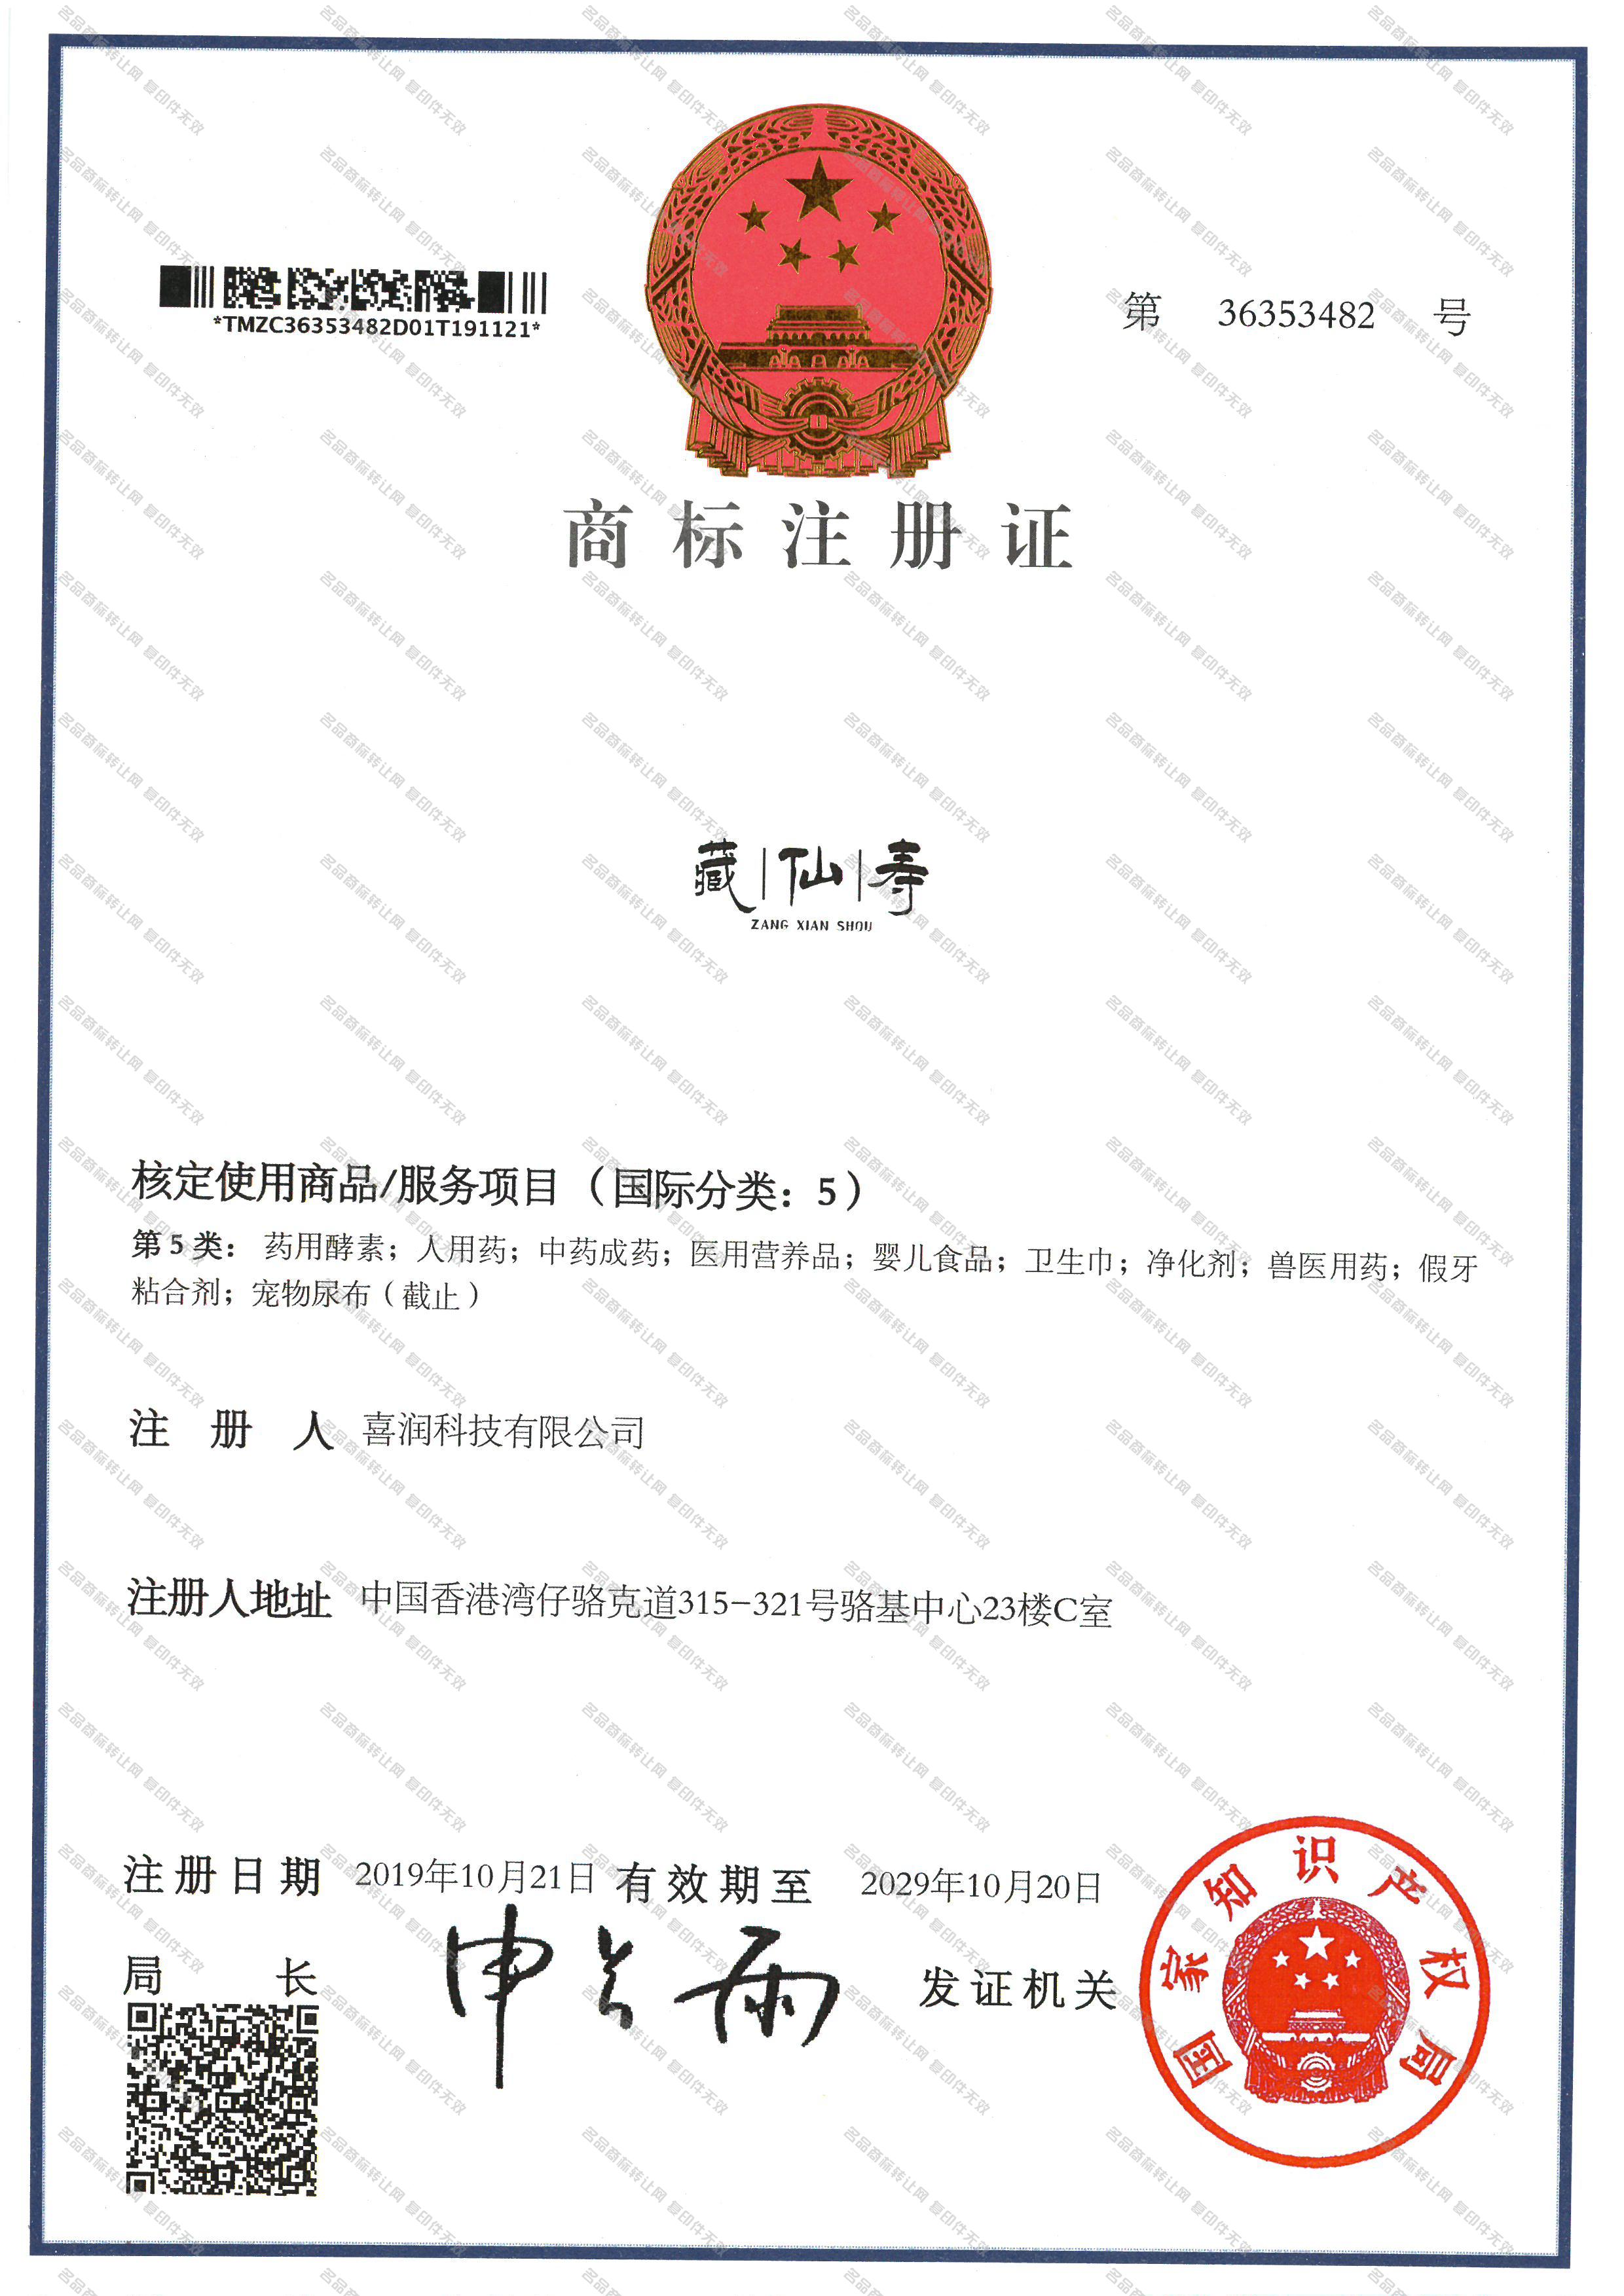 藏仙寿 ZANGXIANSHOU注册证